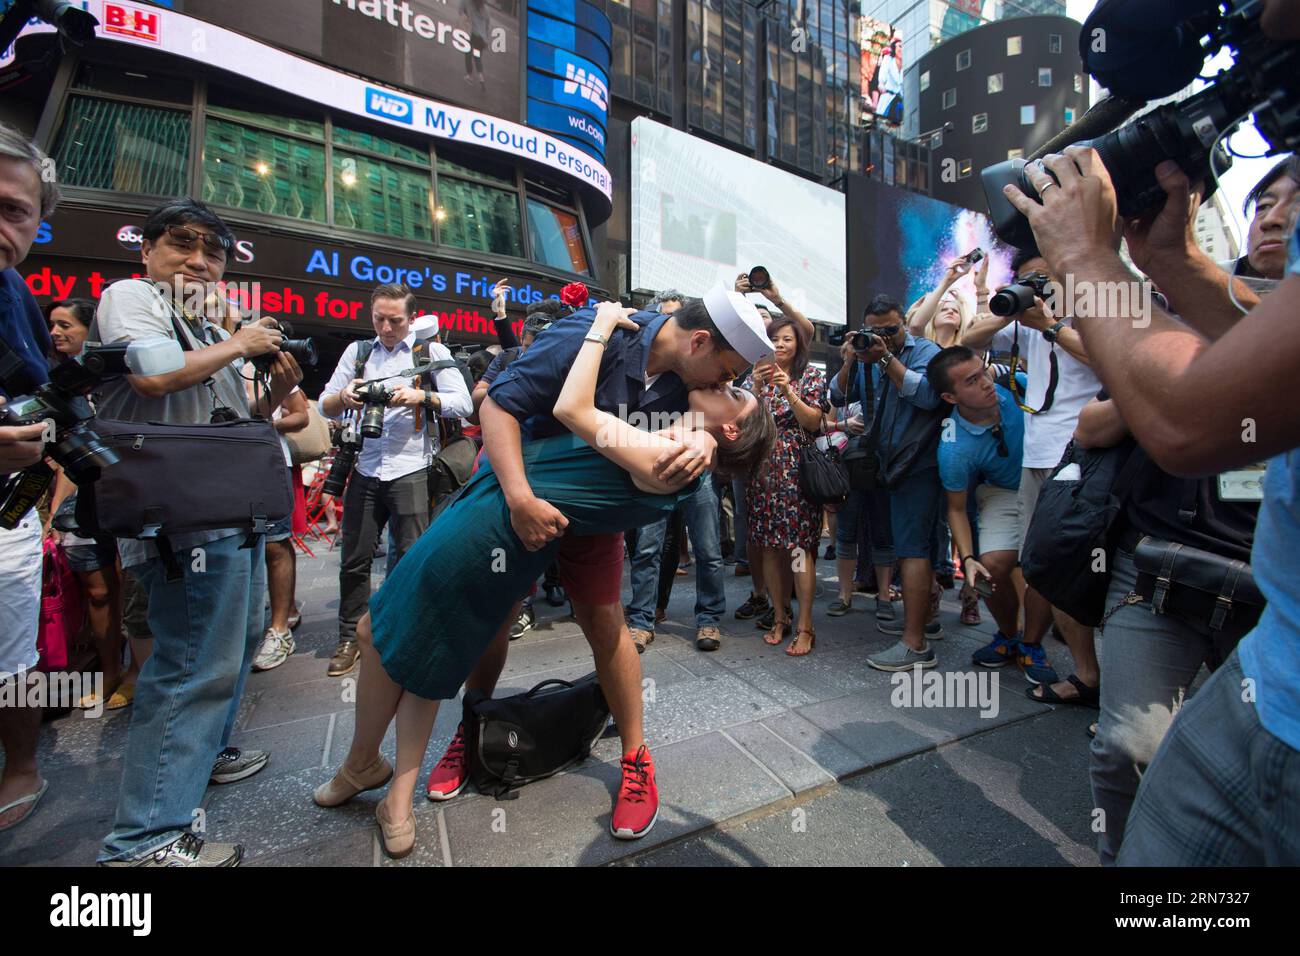 Oscar Gifford(L) und Alessandra Piani küssen sich, um den V-J Day Kiss am Times Square in New York, USA, am 14. August 2015 nachzustellen. Hunderte von Paaren nahmen am Freitag an den Feierlichkeiten Teil, die den Kuss zwischen einem amerikanischen Seemann und einer Krankenschwester nachahmen, den der Fotograf des Life Magazine Alfred Eisenstaedt vor 70 Jahren aufgenommen hatte, als die Amerikaner den V-J-Tag am Times Square feierten, der den Sieg über Japan markierte, der den Krieg 1945 beendete.) US-NEW YORK-TIMES-SIEG LixMuzi PUBLICATIONxNOTxINxCHN Oscar Gifford l und Alessandra Piani Kiss zur Wiederaufnahme des V J Day Kiss in Times Sq Stockfoto